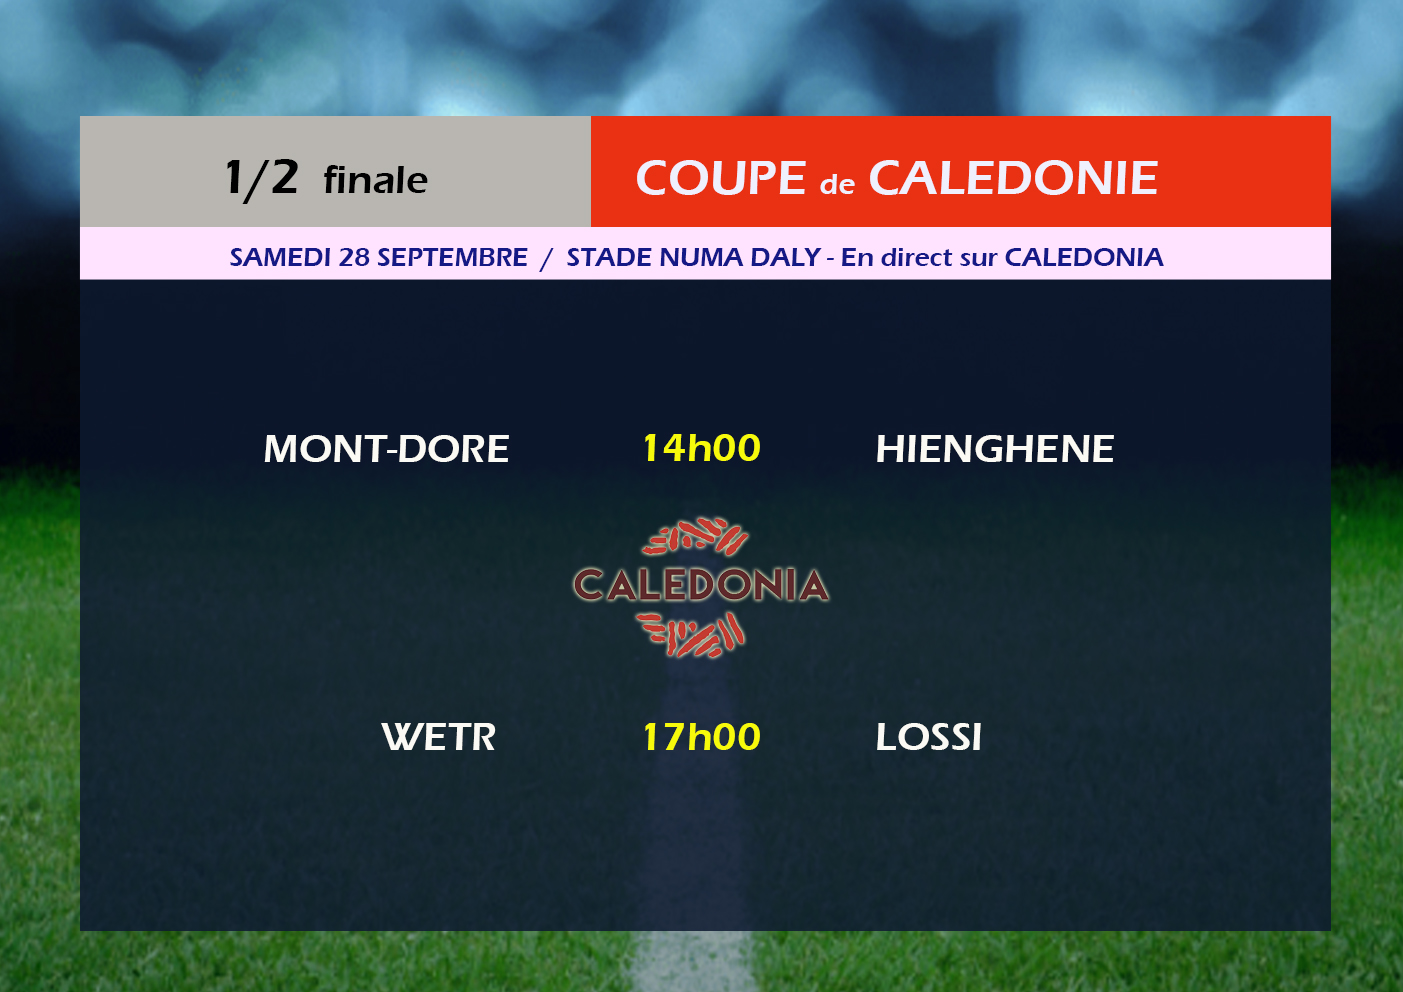 Objectif  "FINALE" / Coupe de Calédonie - 1/2 finales